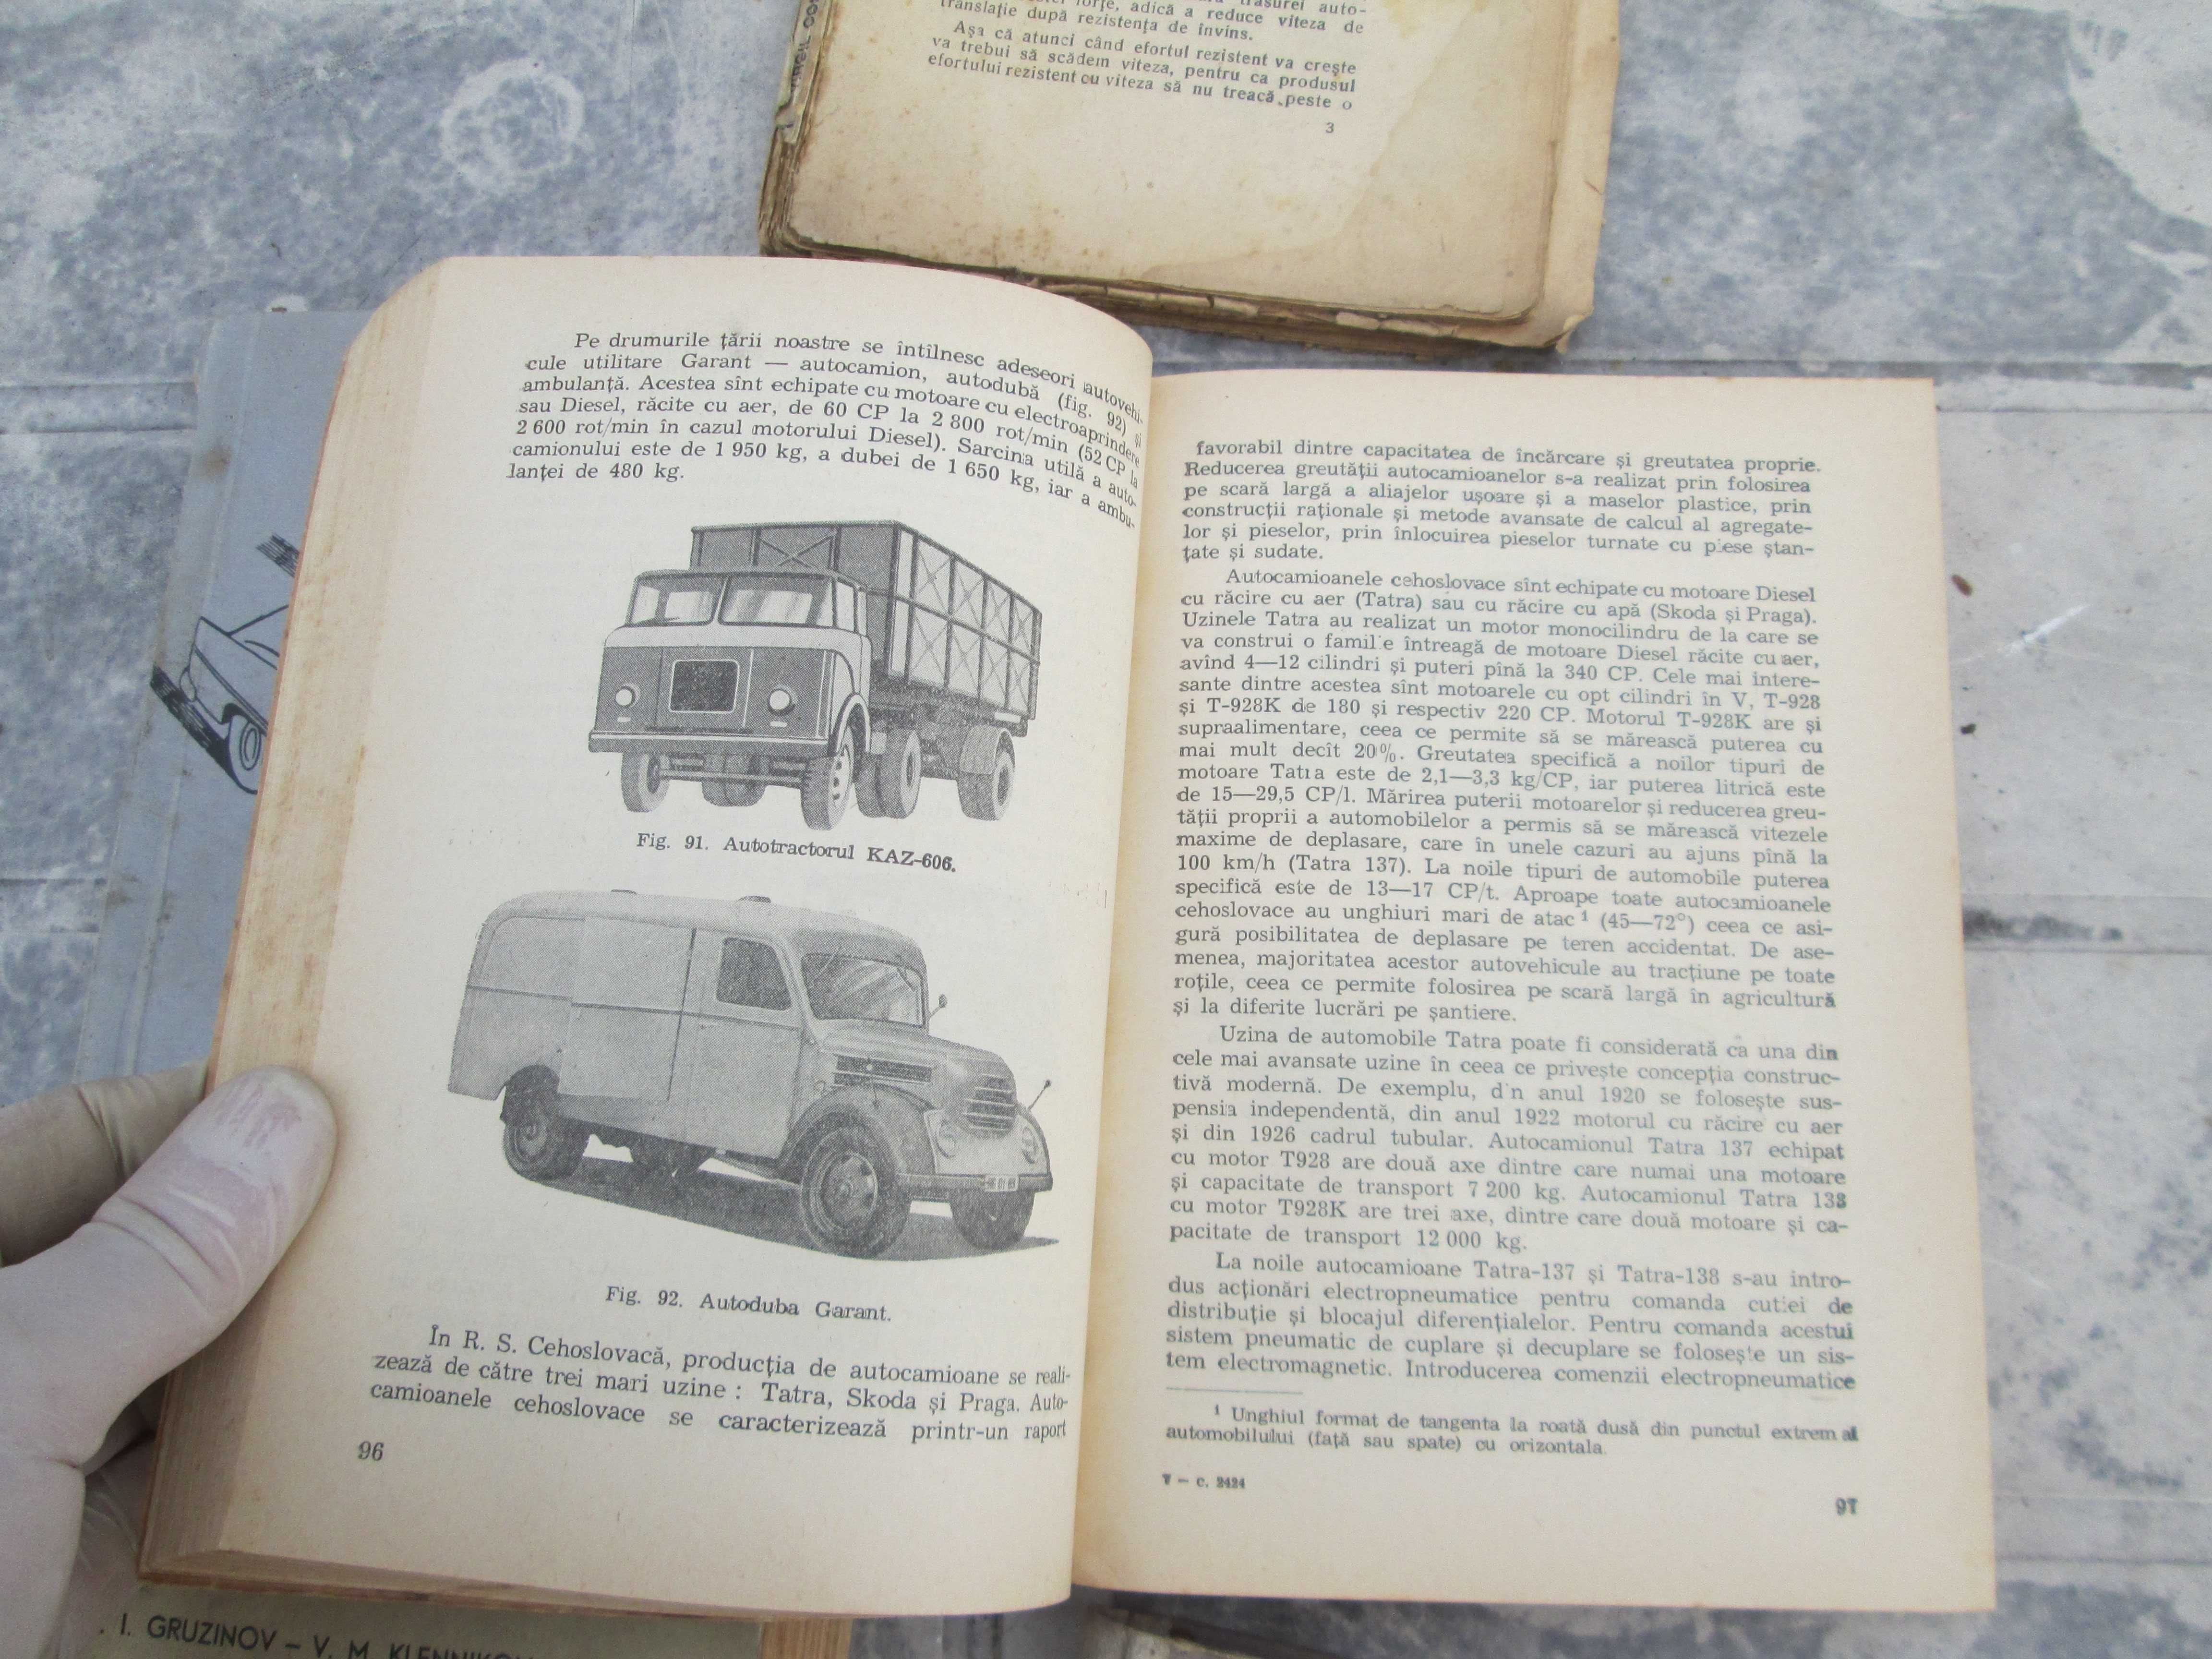 Carti vechi despre automobile aparute in anii 50-60 la Editura Tehnica